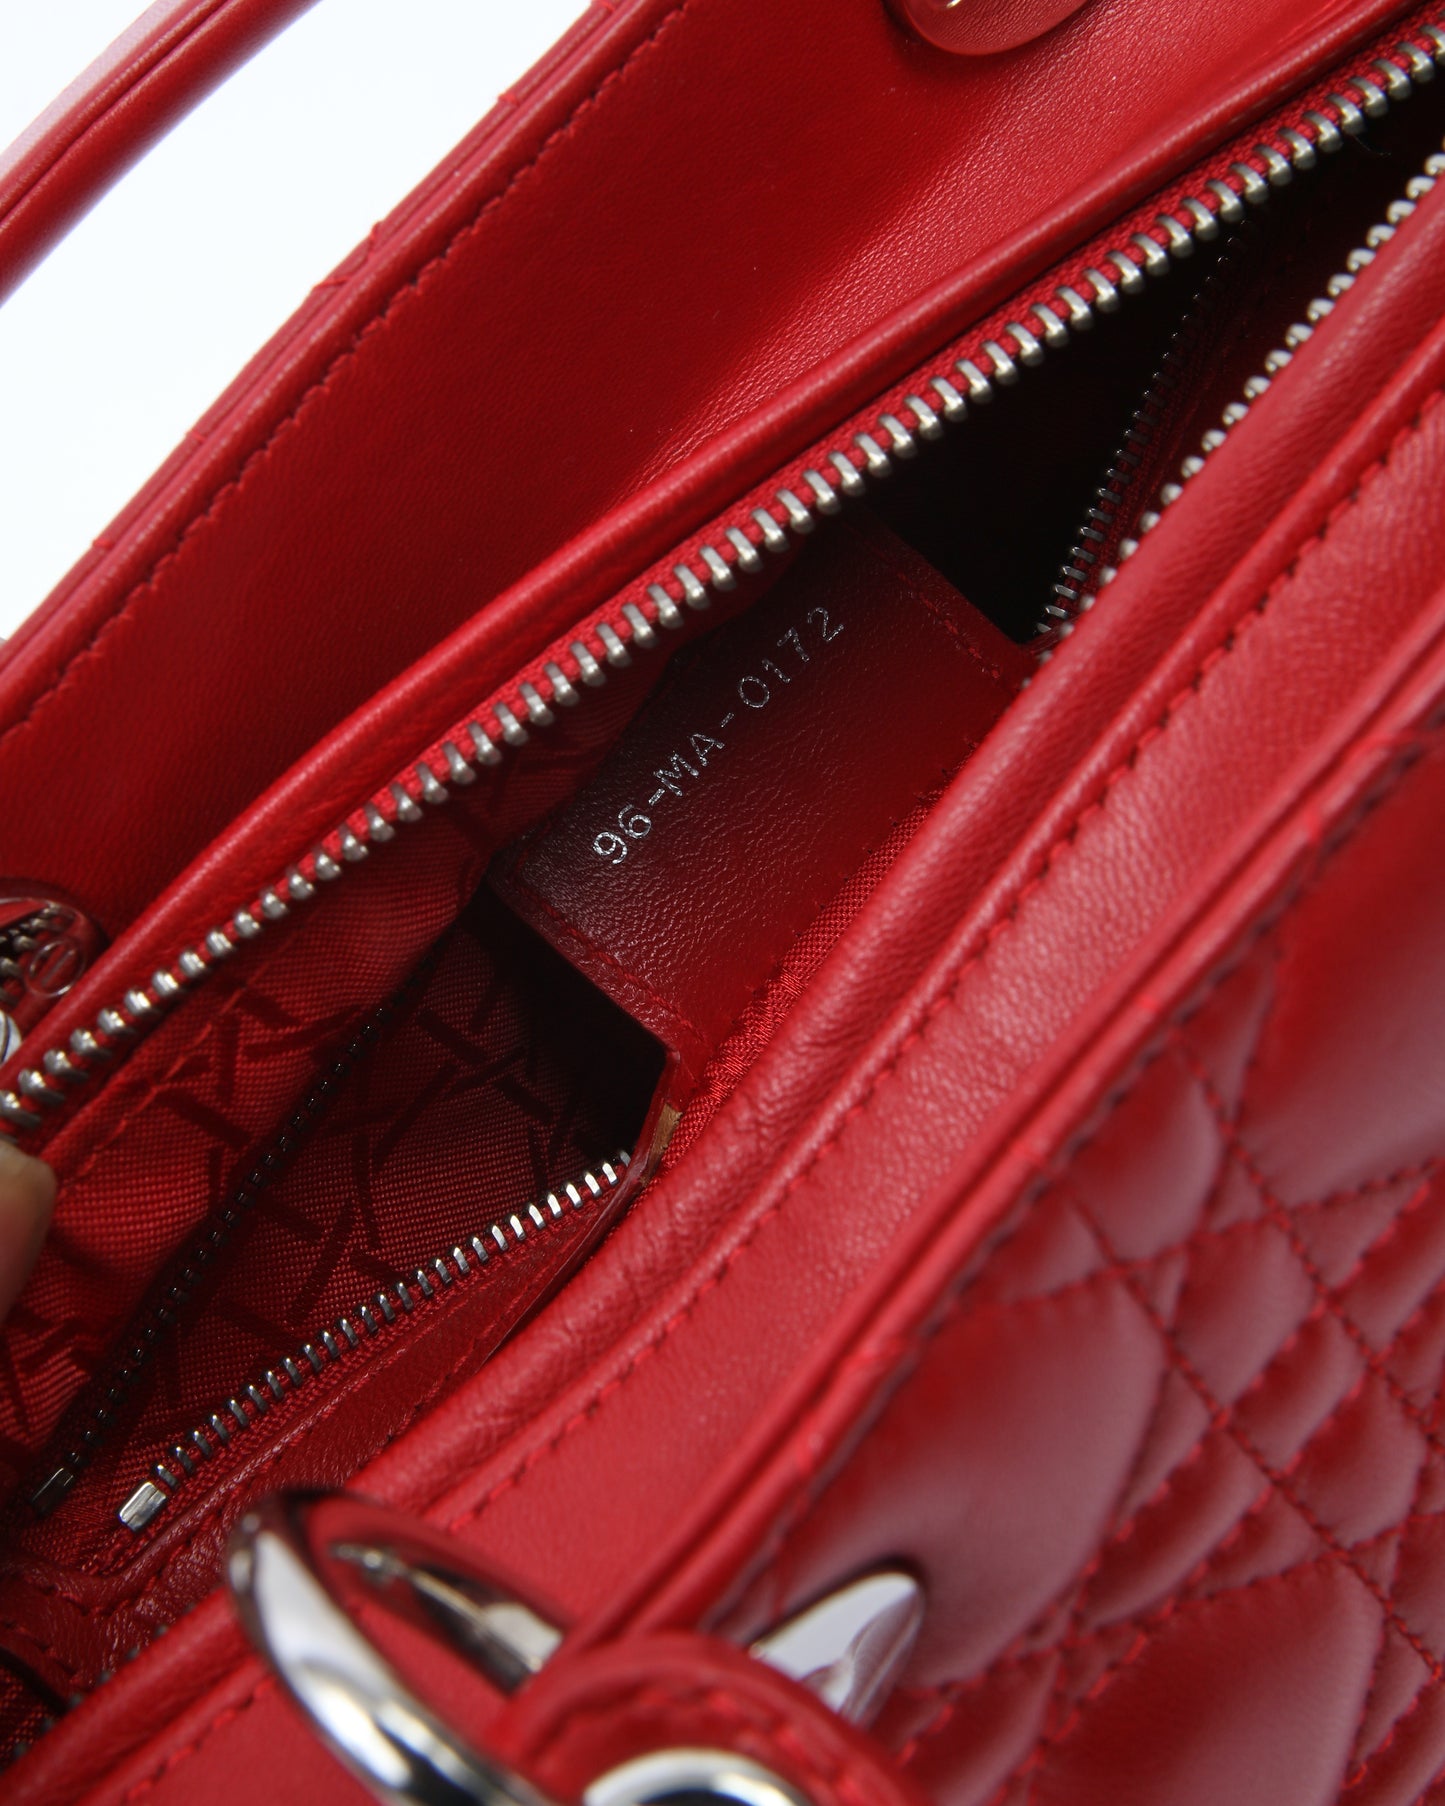 Dior Red Leather Cannage Medium Lady Dior Bag